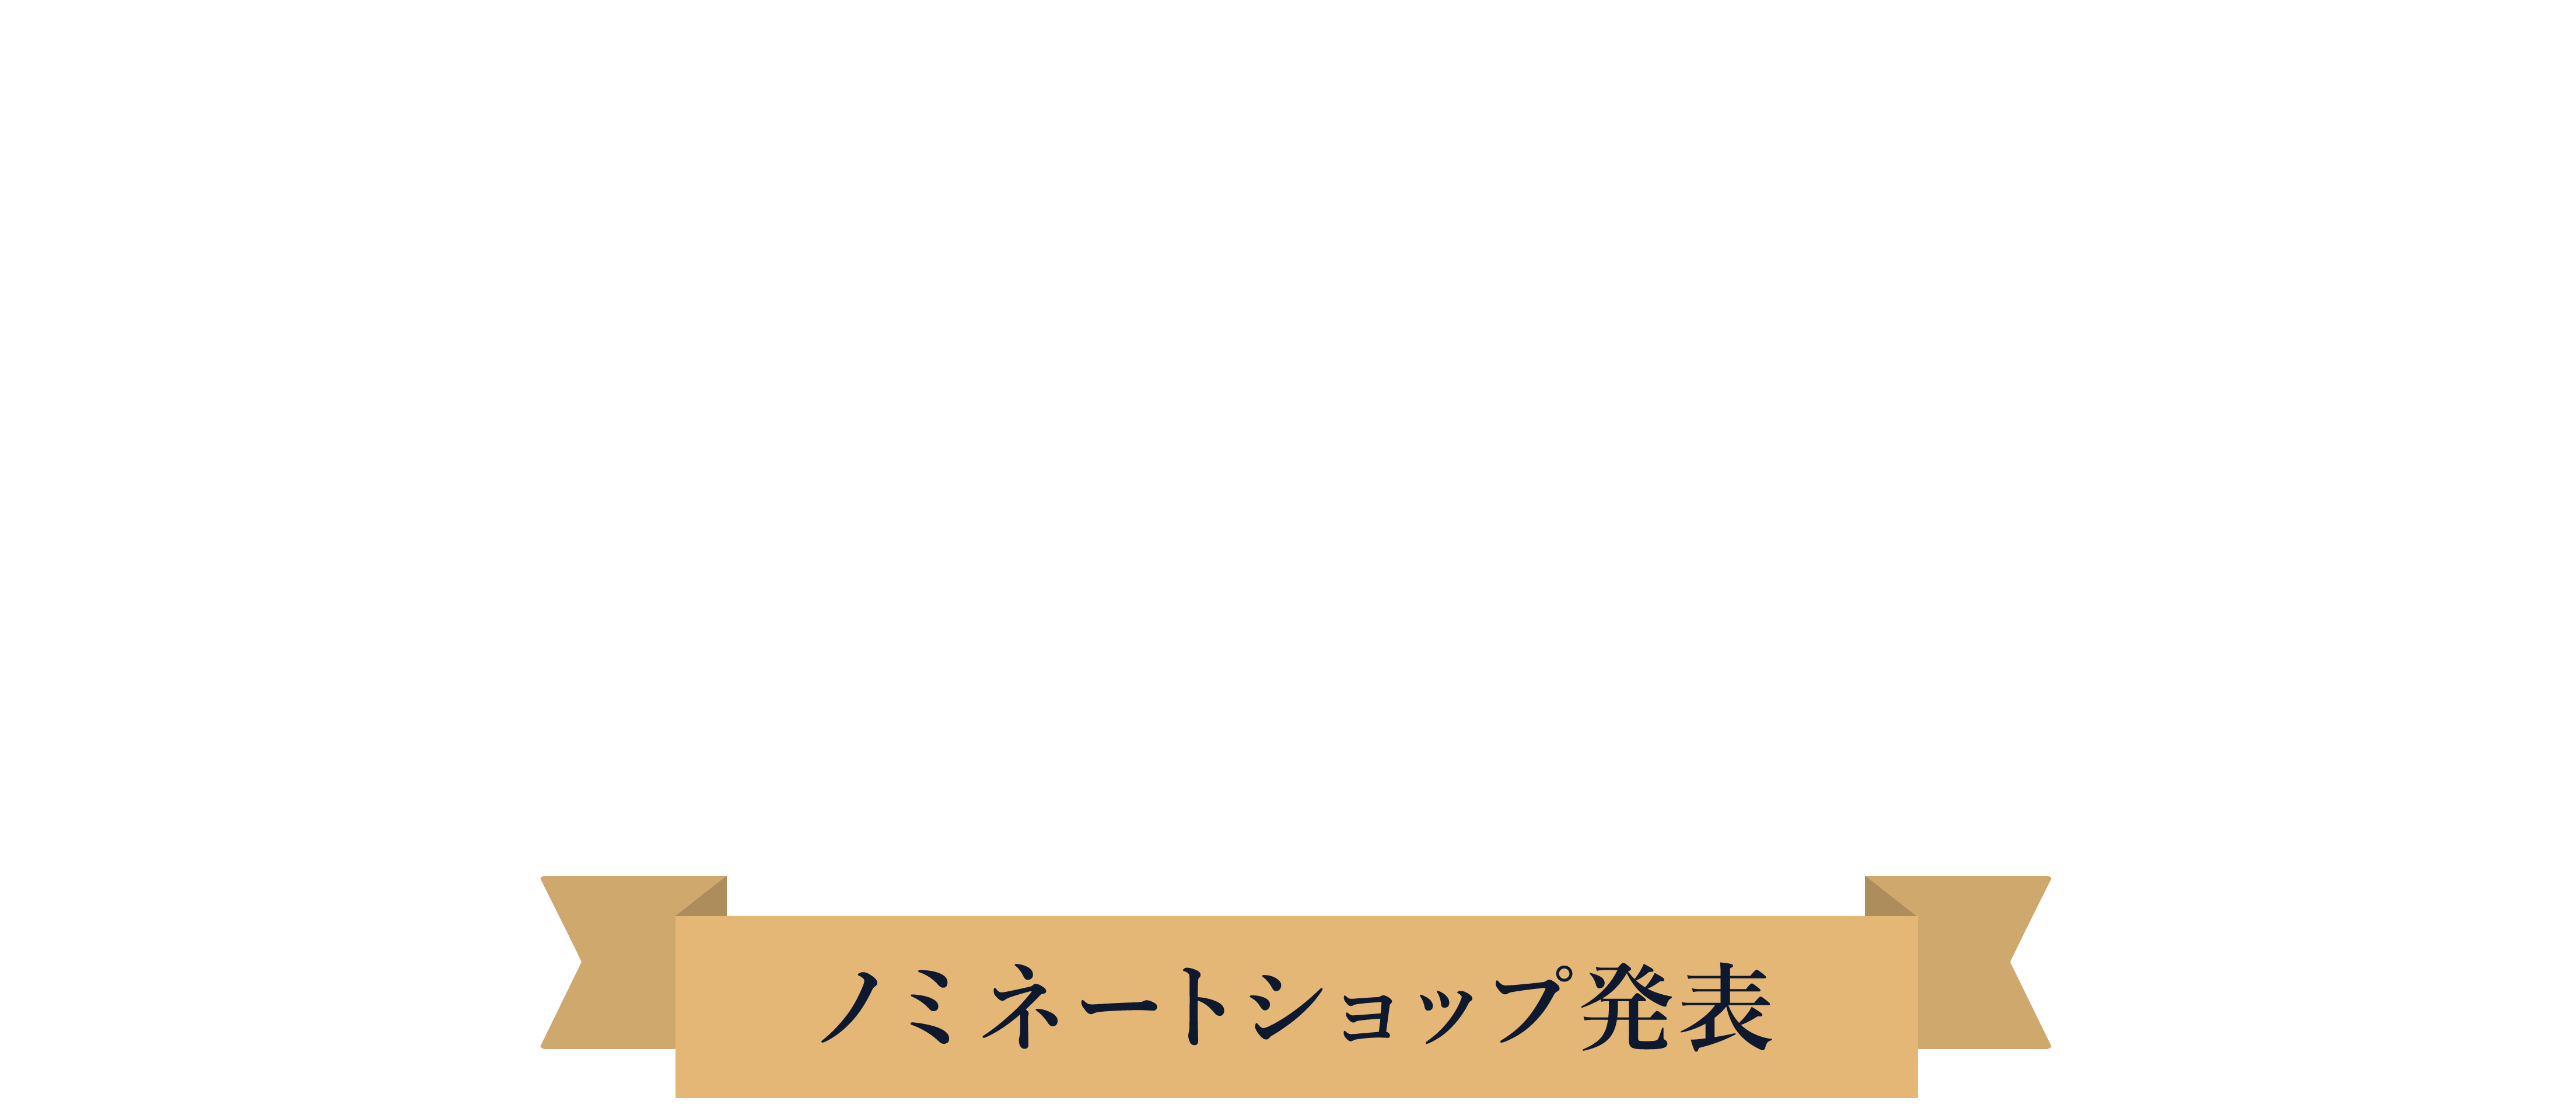 カラーミーショップ大賞2022-ノミネートショップ発表